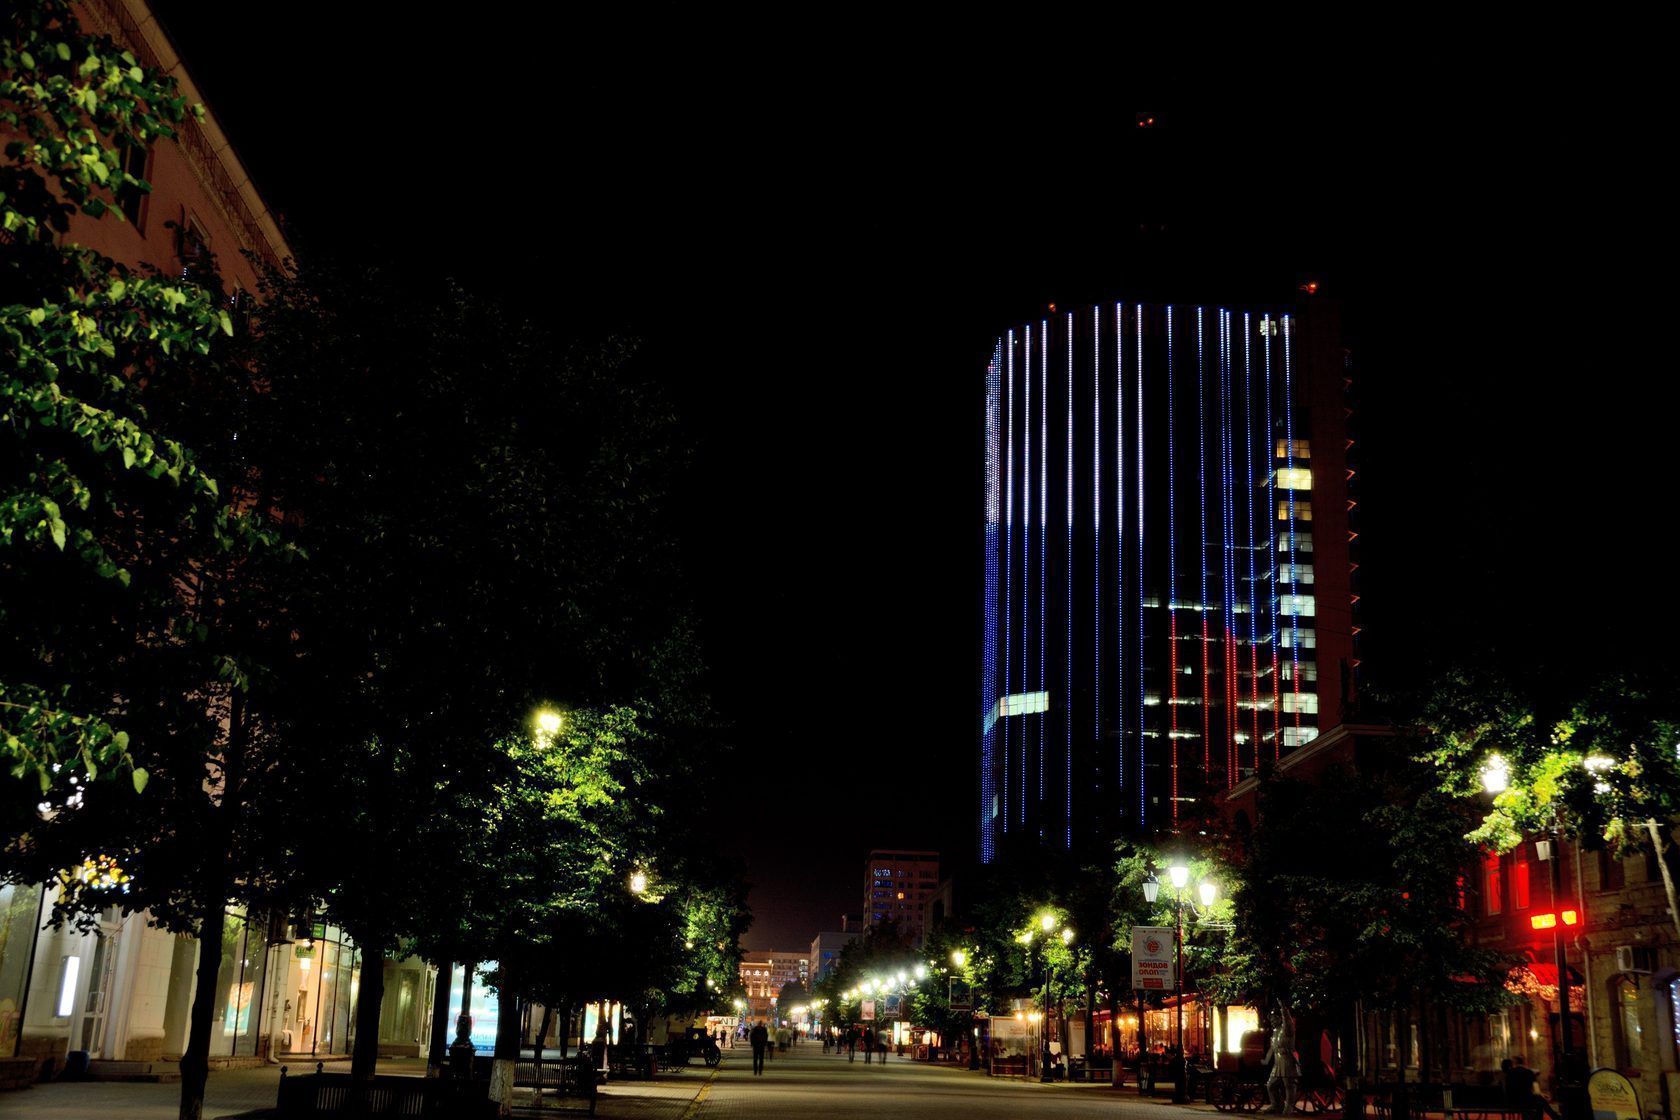 «Челябинск-Сити» - освещение культурно-развлекательного центра, г. Челябинск, 2017